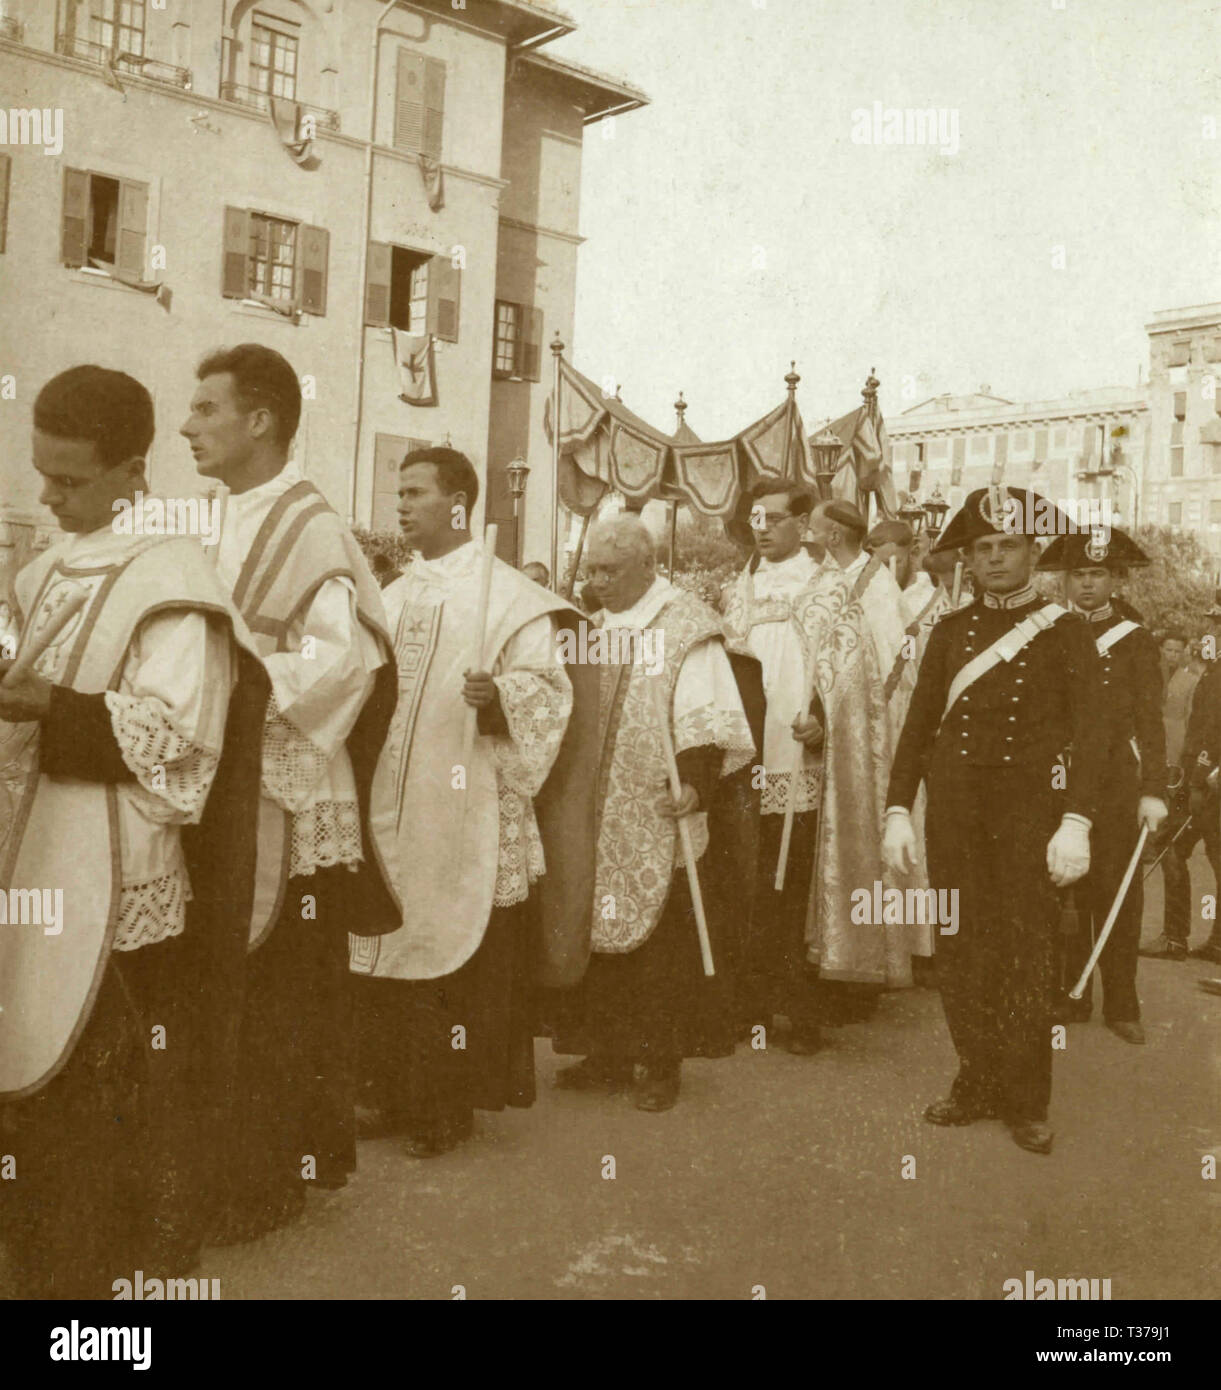 Katholische Priester und carabinieri während der cristo Re Prozession, Rom, Italien 1920 s Stockfoto